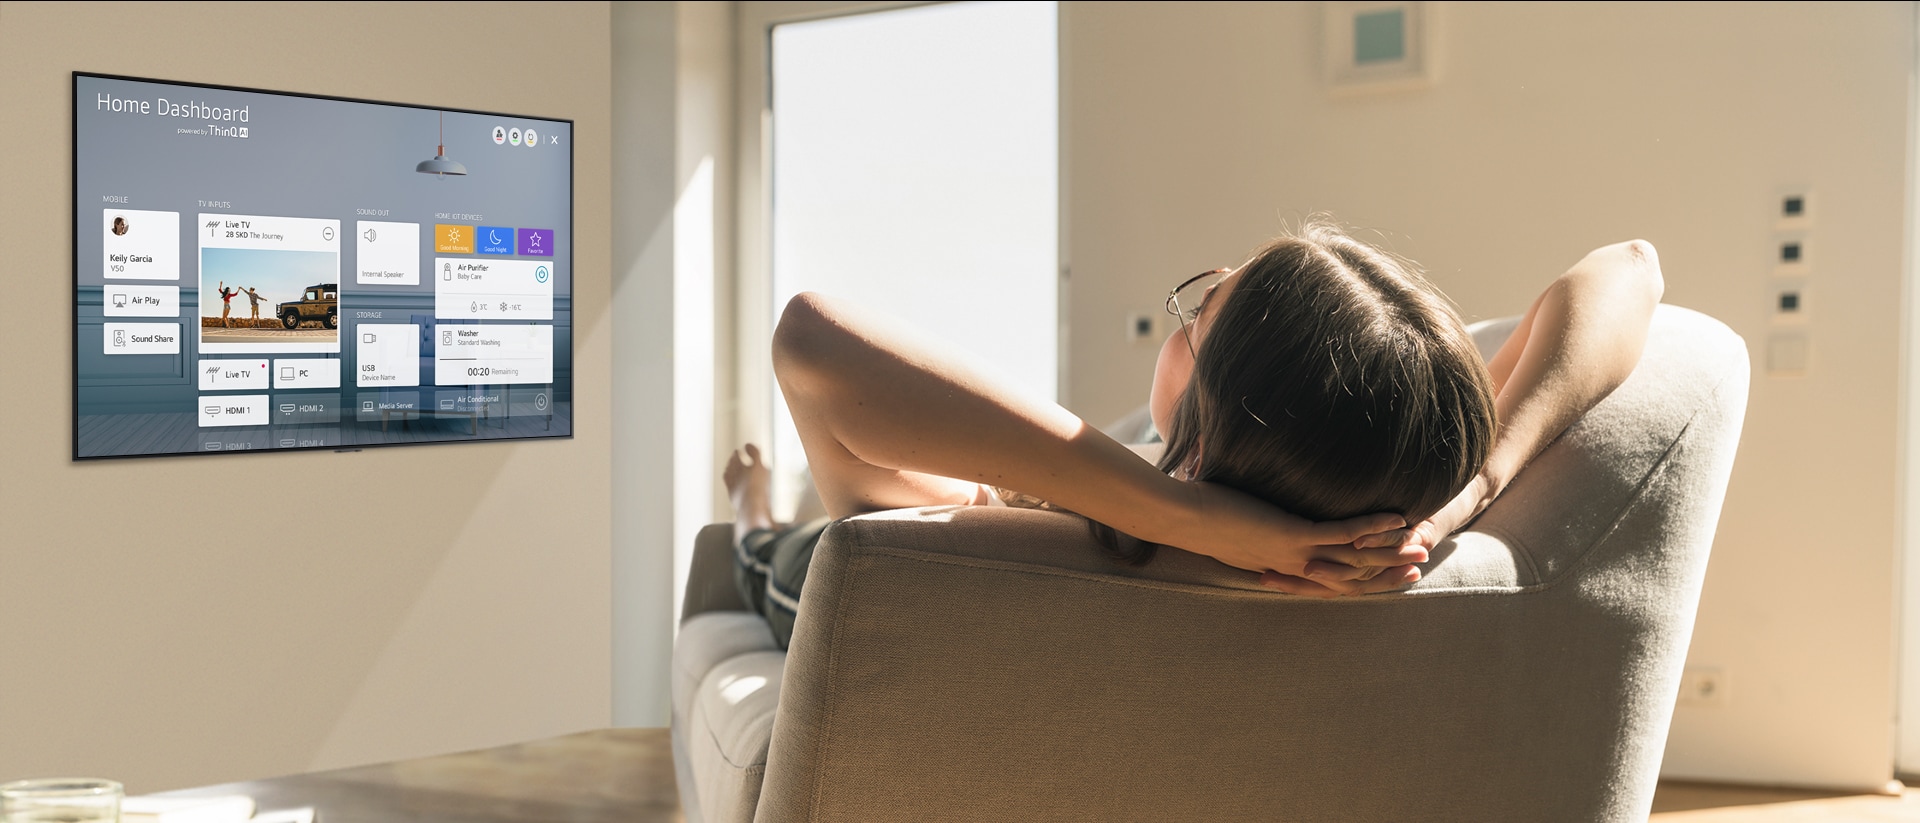 سيدة مستلقية على أريكة تطلب من التلفزيون خفض درجة الحرارة باستخدام لوحة المعلومات الرئيسية على شاشة التلفزيون